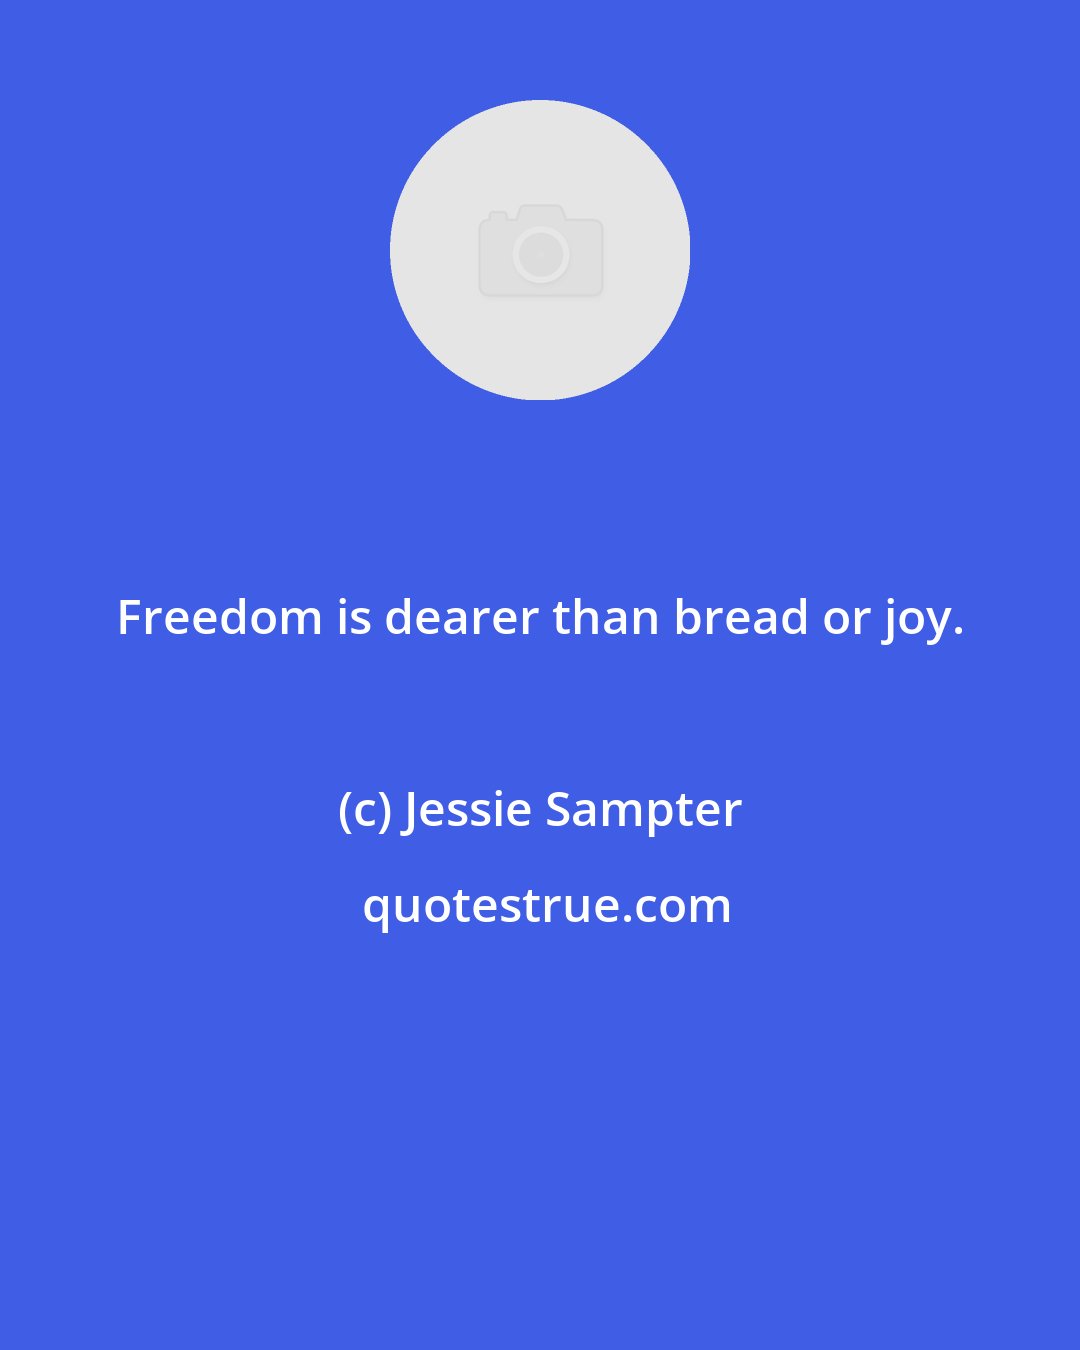 Jessie Sampter: Freedom is dearer than bread or joy.